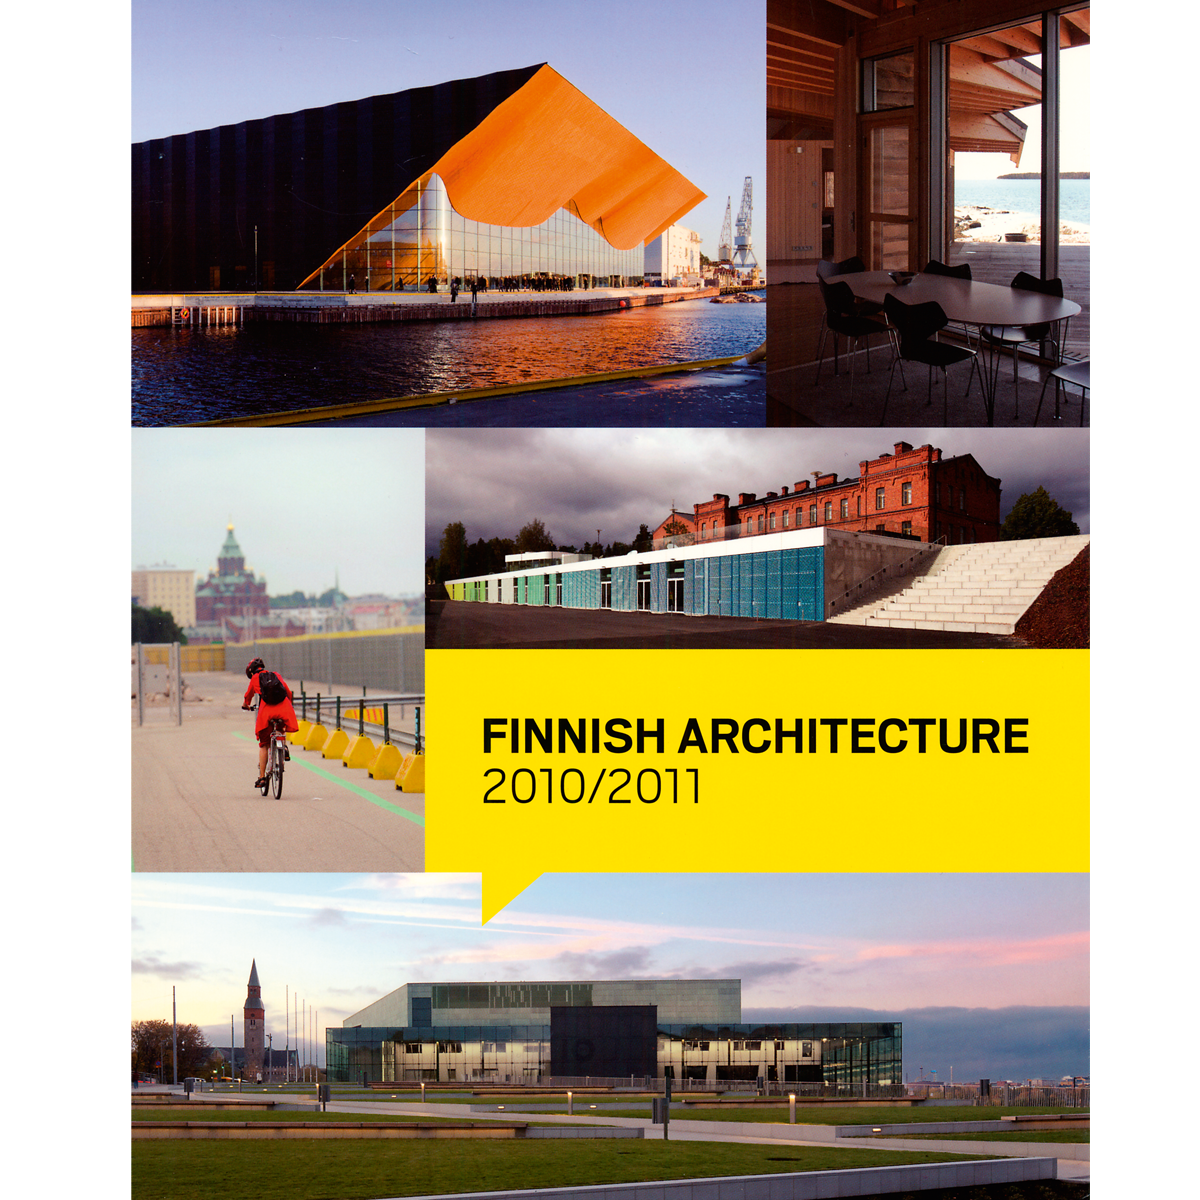 Finnish Architecture